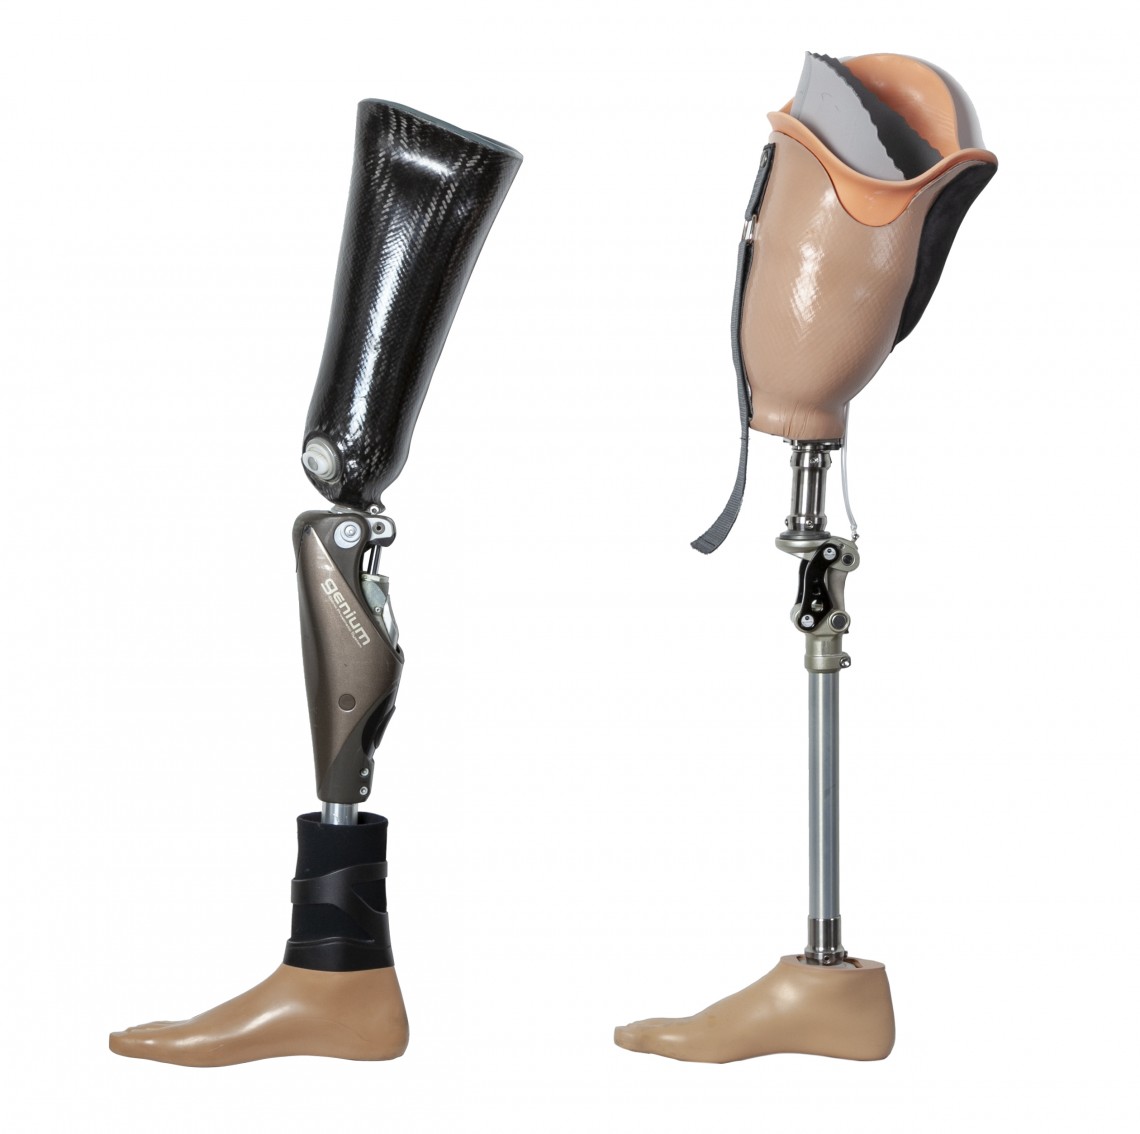 Originalexponate von zwei modernen, technisch aussehenden modularen Beinprothesen aus verschiedenen Komponenten und Werkstoffen